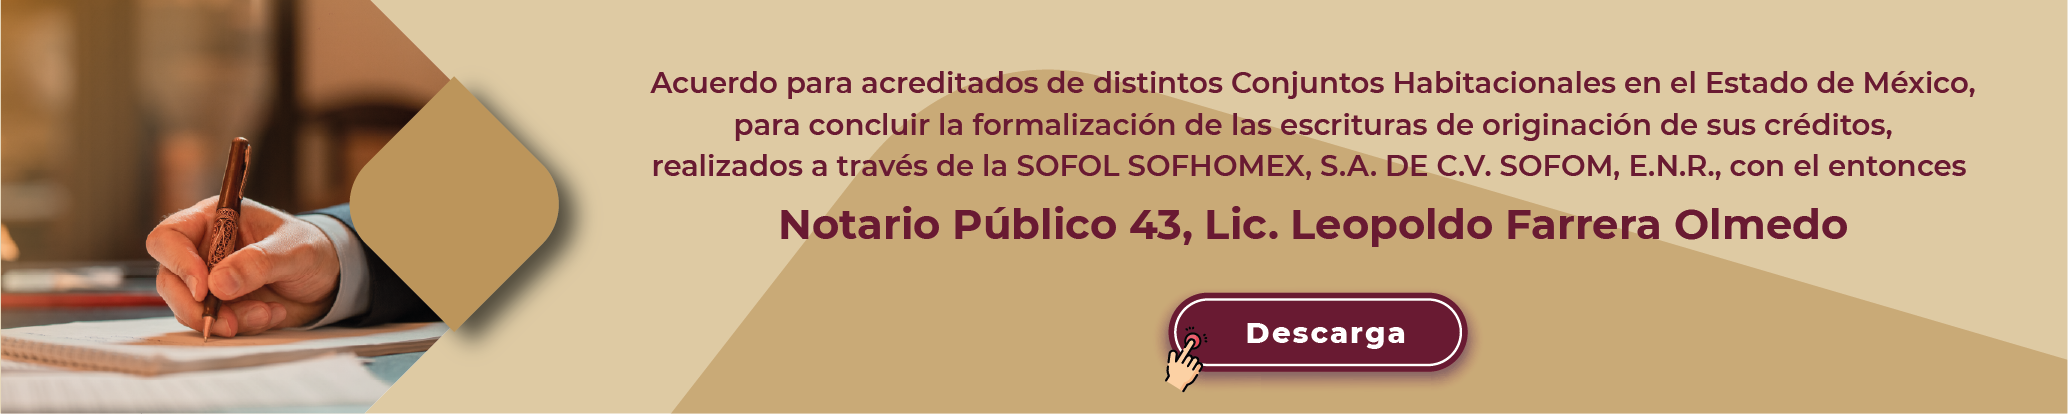 Acuerdo para acreditados de distintos Conjuntos Habitacionales en el Estado de México, para concluir la formalización de las escrituras de originación de sus créditos, realizados a través de la SOFOL SOFHOMEX, S.A. DE C.V. SOFOM, E.N.R., con el entonces, Notario Público 43, Lic. Leopoldo Farrera Olmedo, descarga